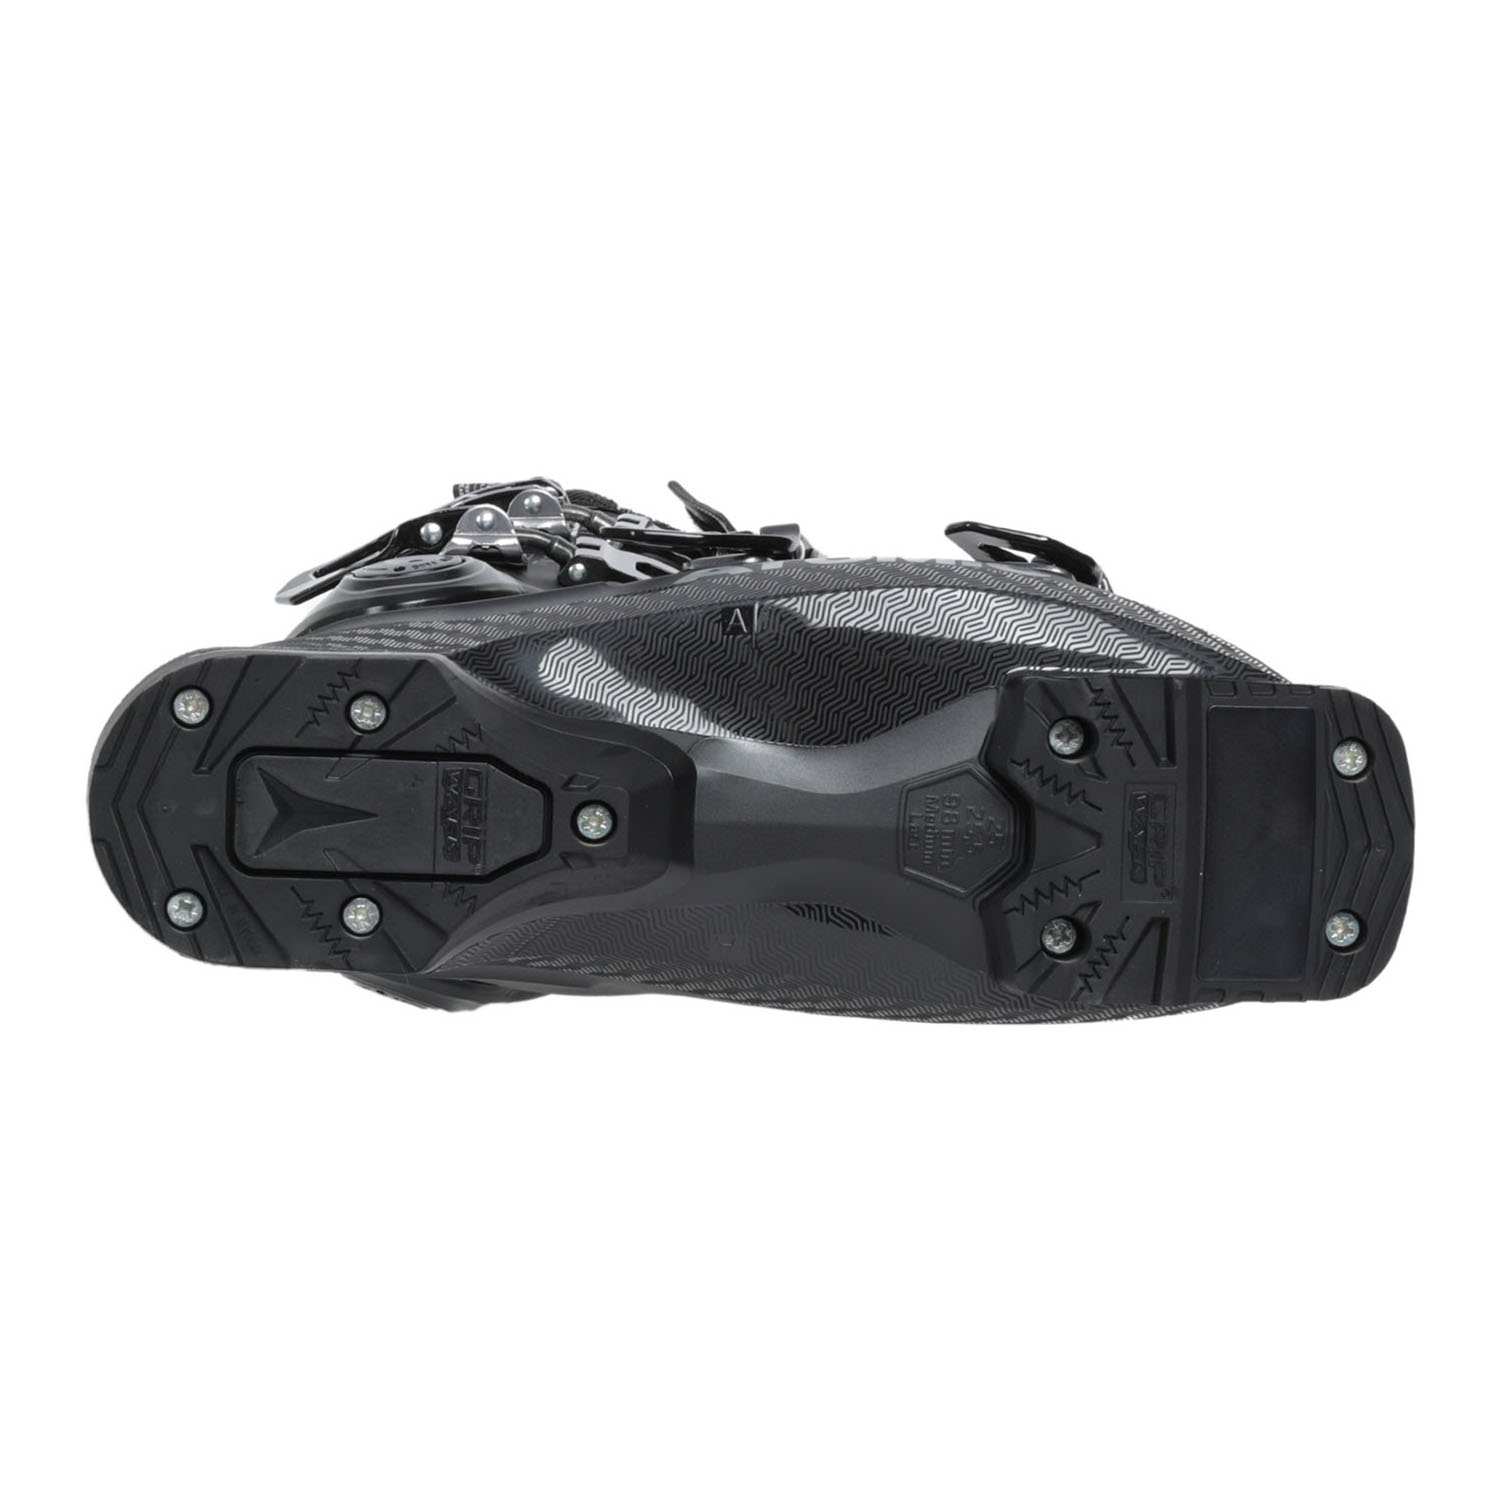 Горнолыжные ботинки ATOMIC Hawx Prime 115 S W GW black